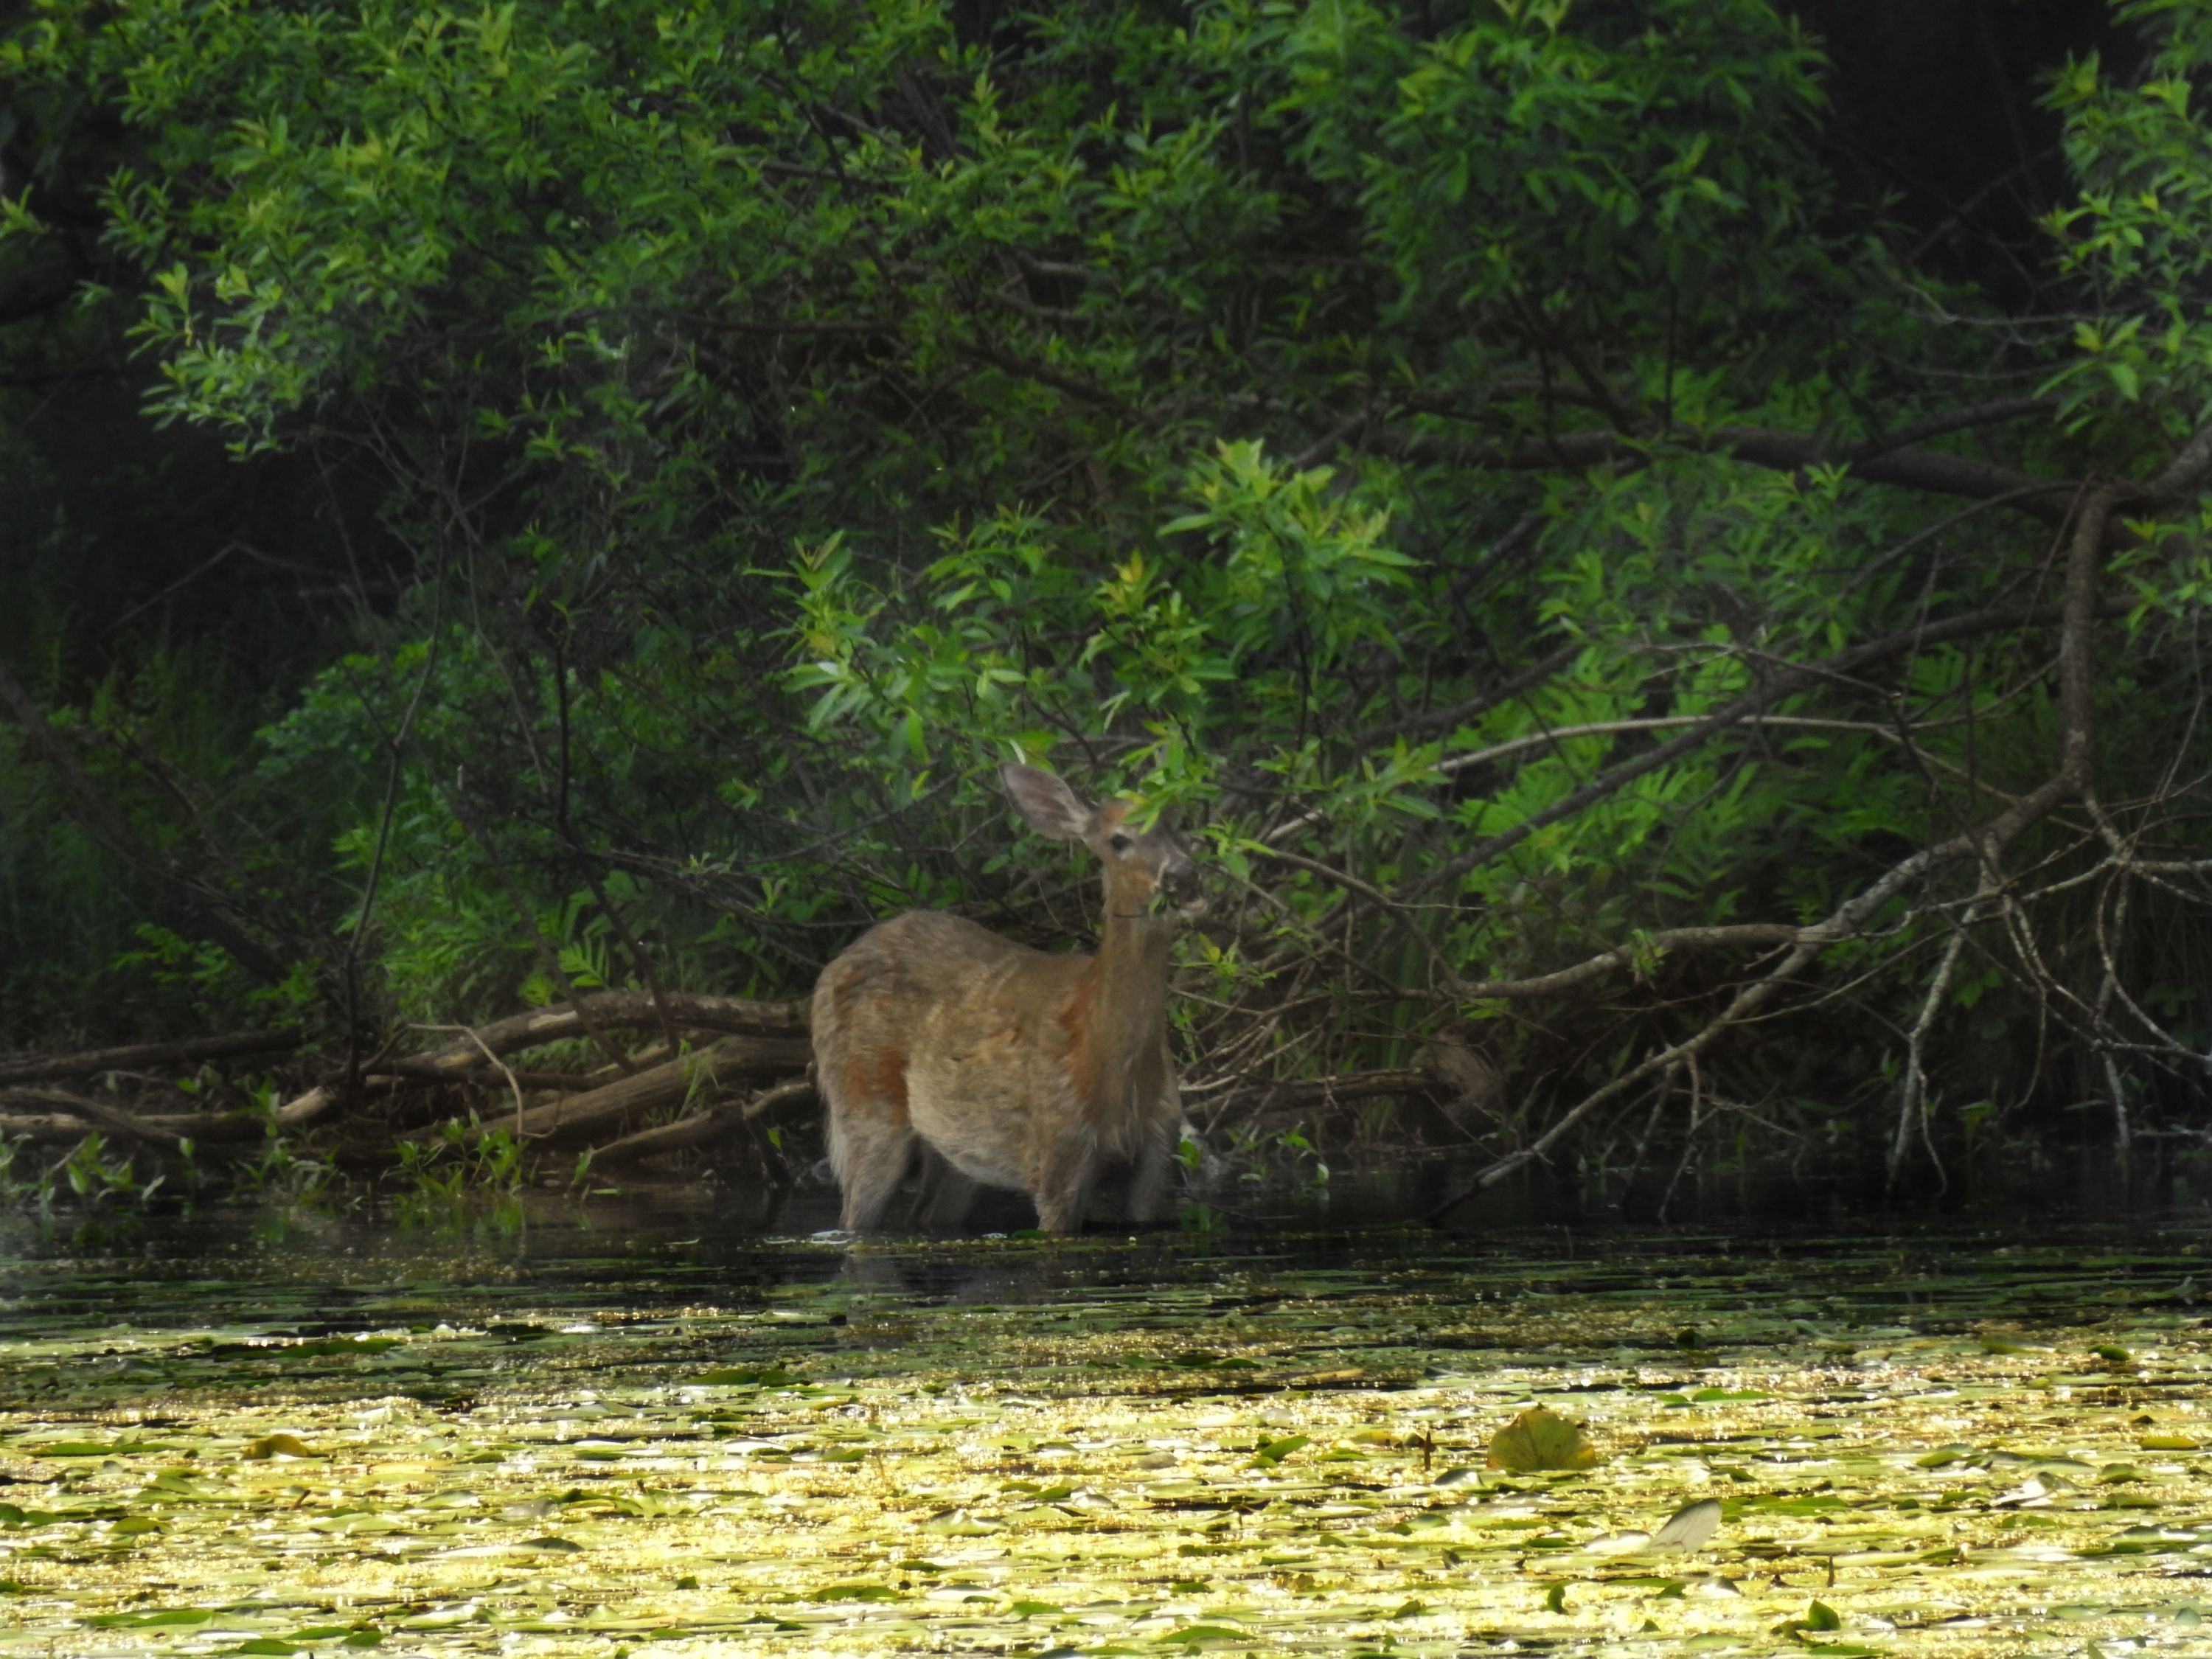 deer in pond by minx267